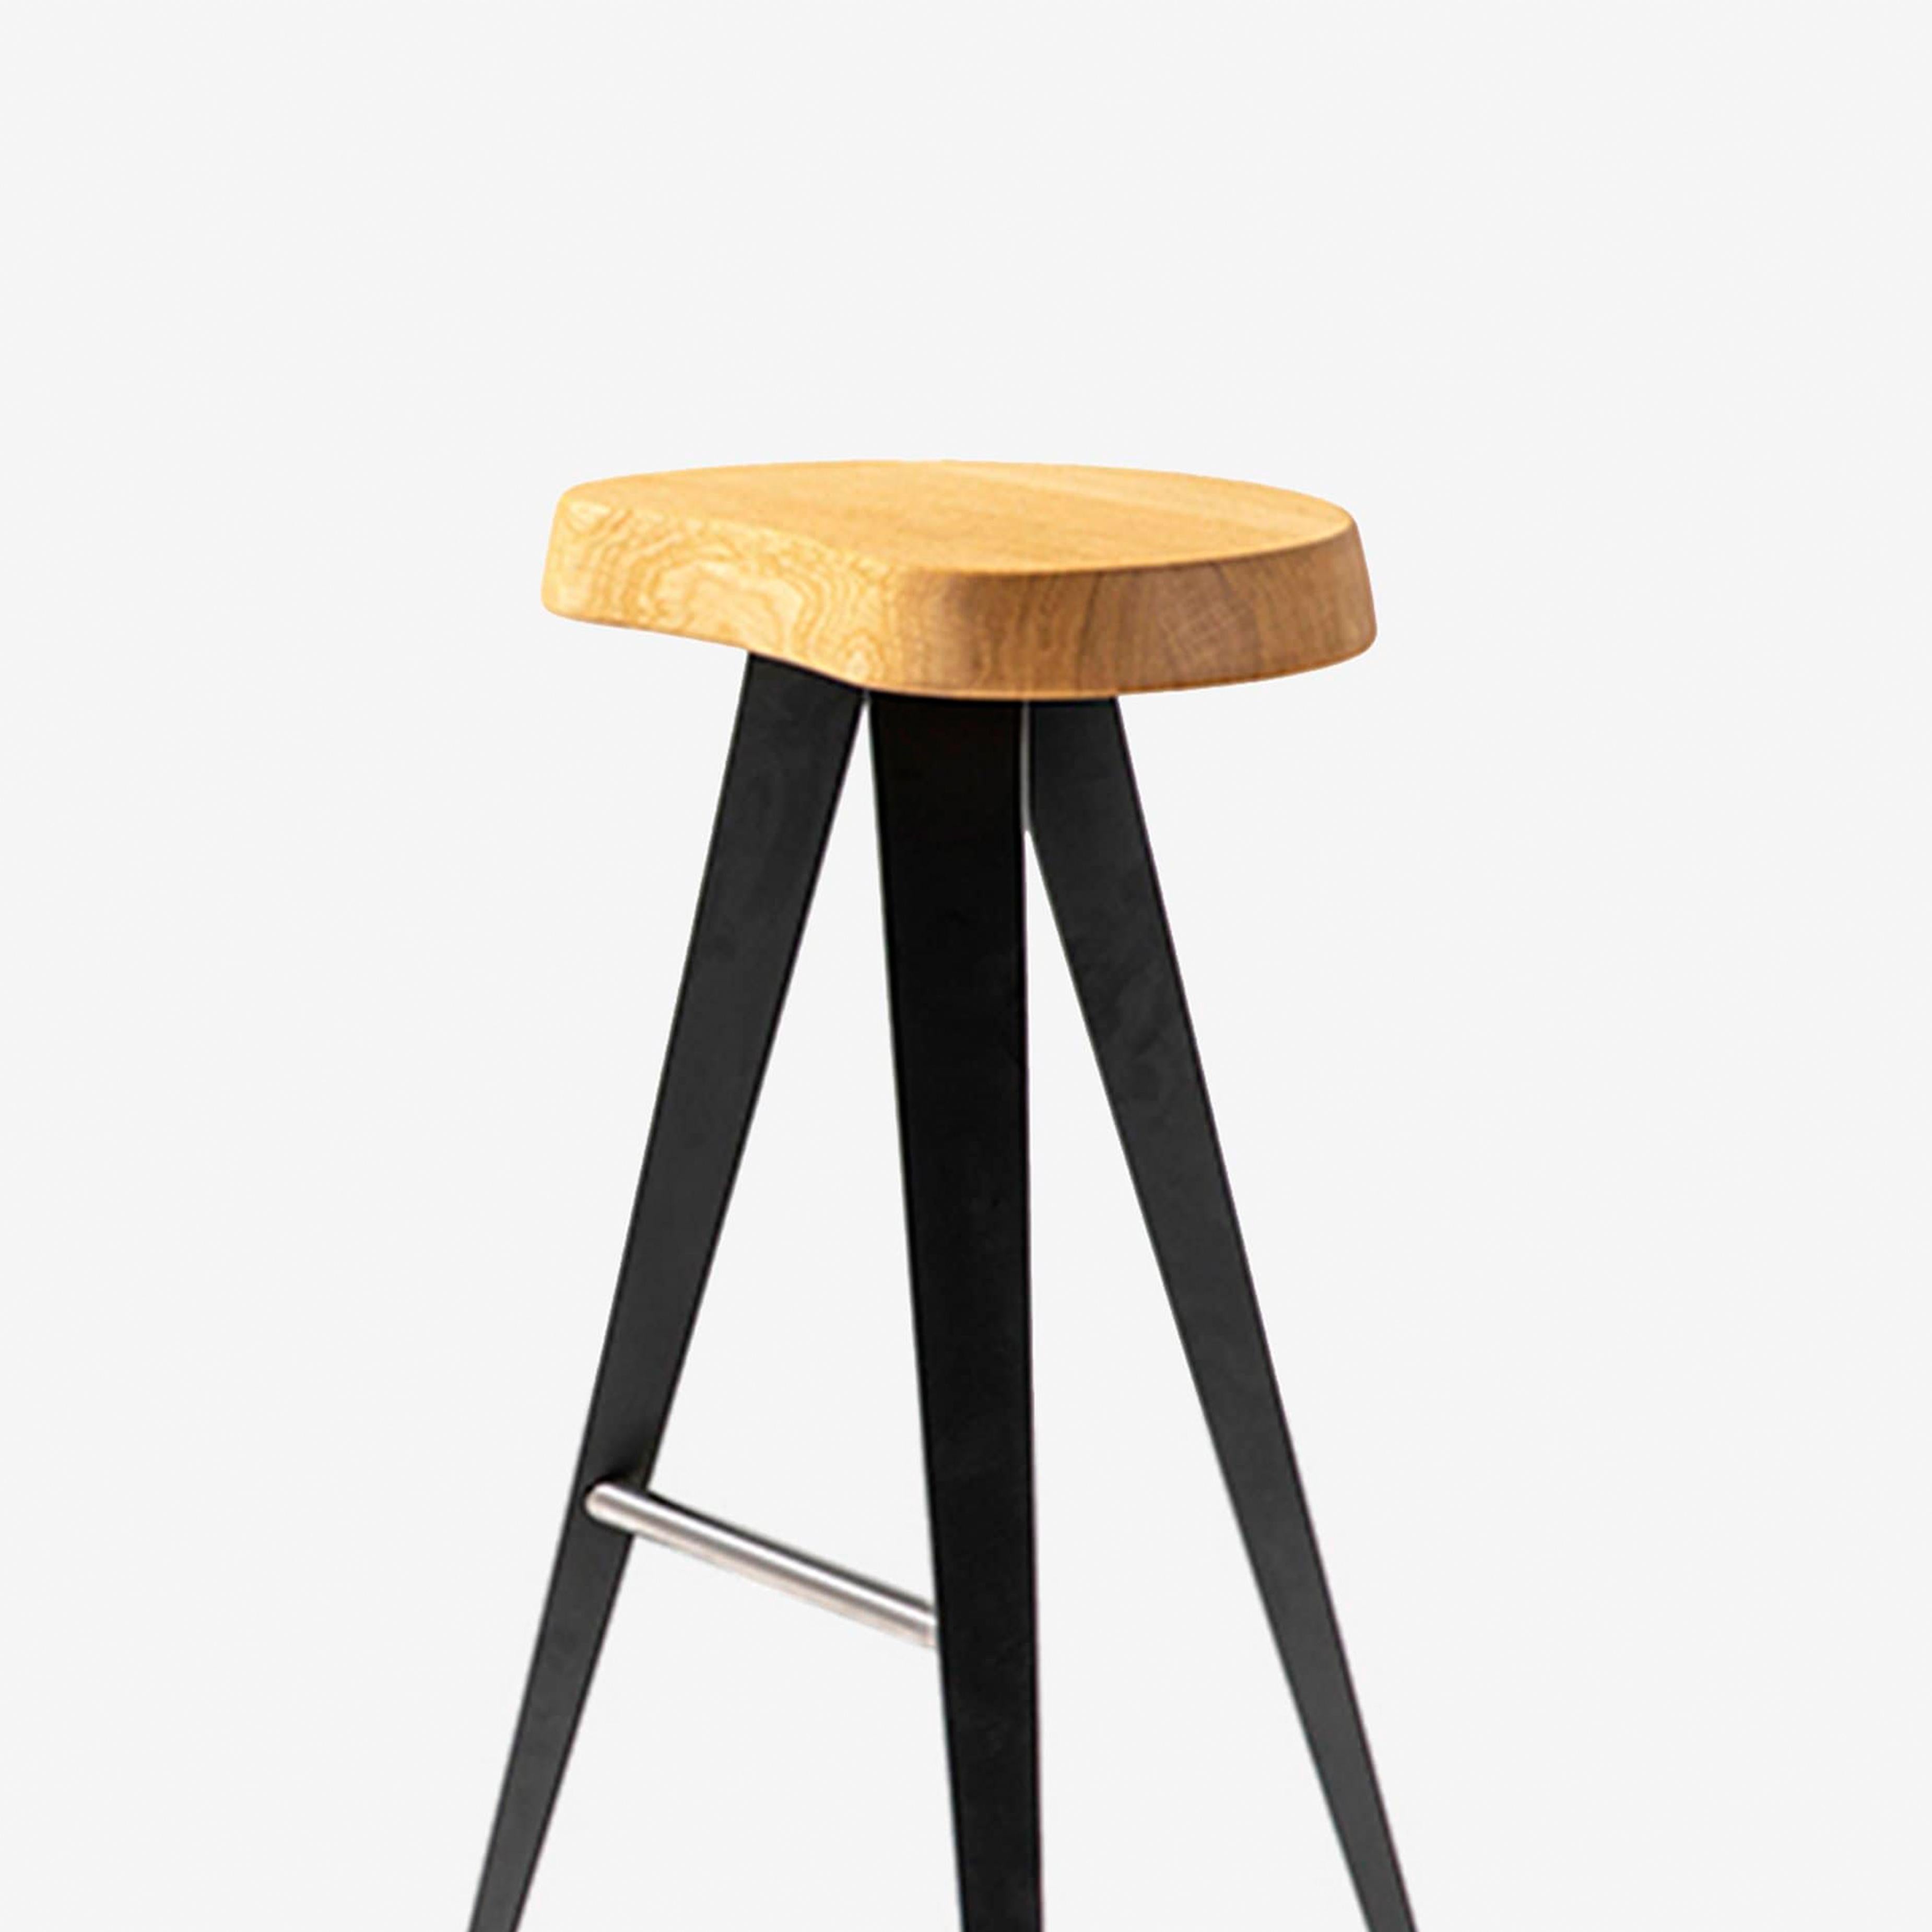 Dieser Hocker aus der Mexique-Familie ist 72 cm hoch. Der Freiform-Stuhl aus Massivholz wird durch die Leichtigkeit der geometrischen Struktur der Metallbeine mit mattschwarzer oder glänzender Rotguss-Lackierung wunderbar in Szene gesetzt.

Dieser